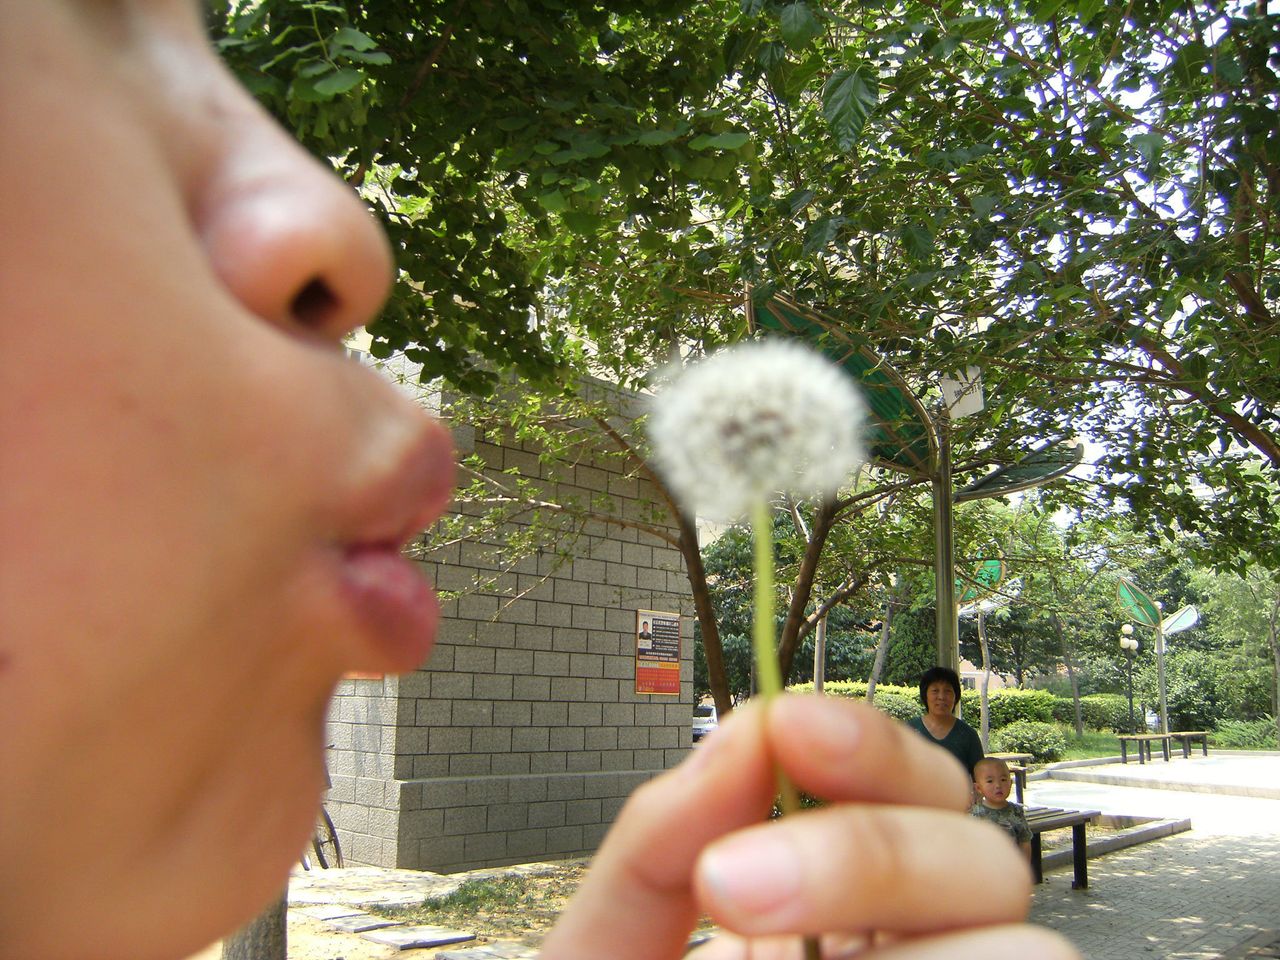 Jin Ling, "Watching dandelion watching blowing dandelion," China, 2009.